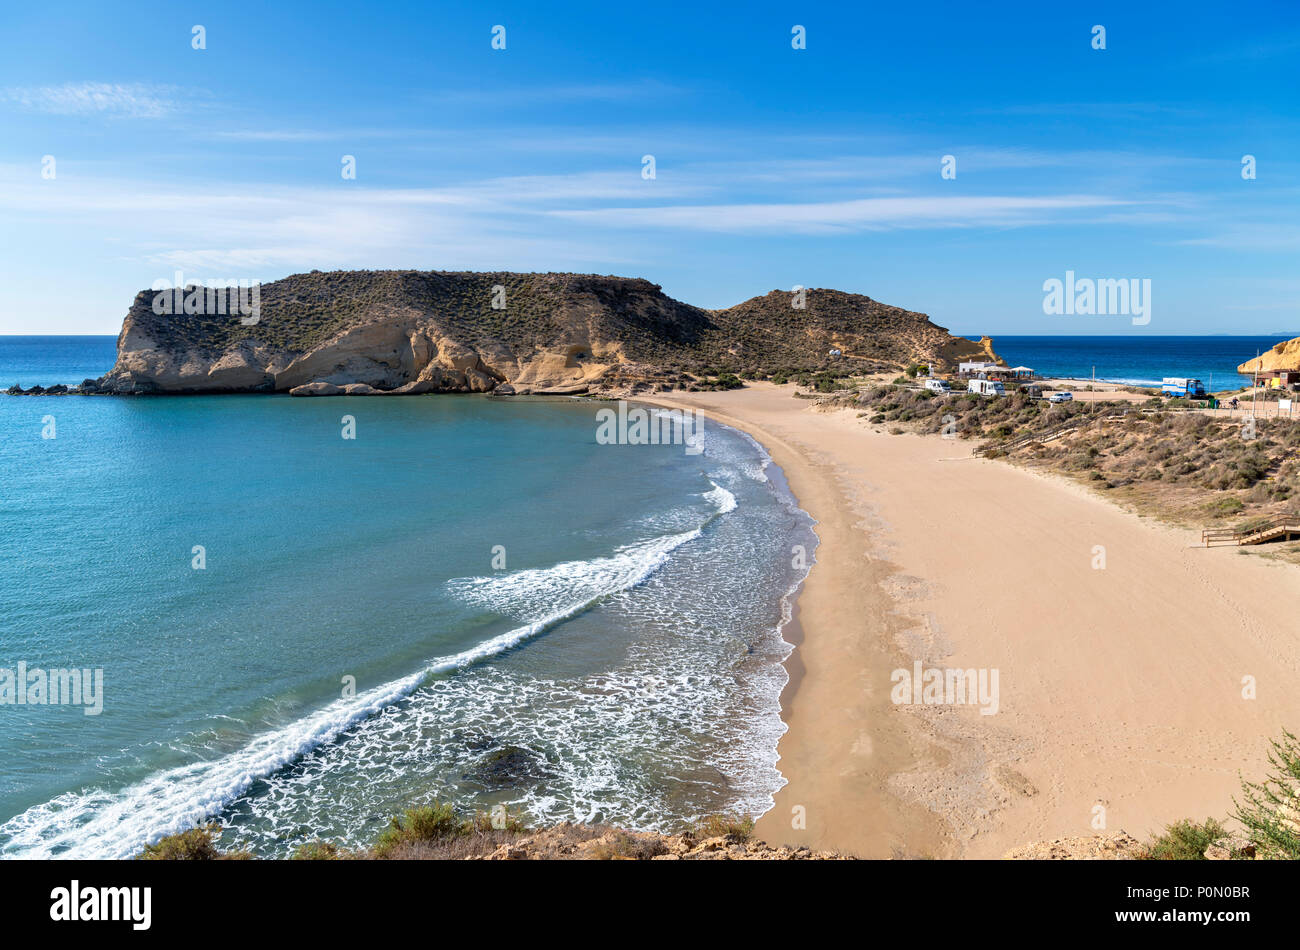 Playa Carolina beach, Cuatro Calas, Aguilas, Murcia, Espagne Banque D'Images